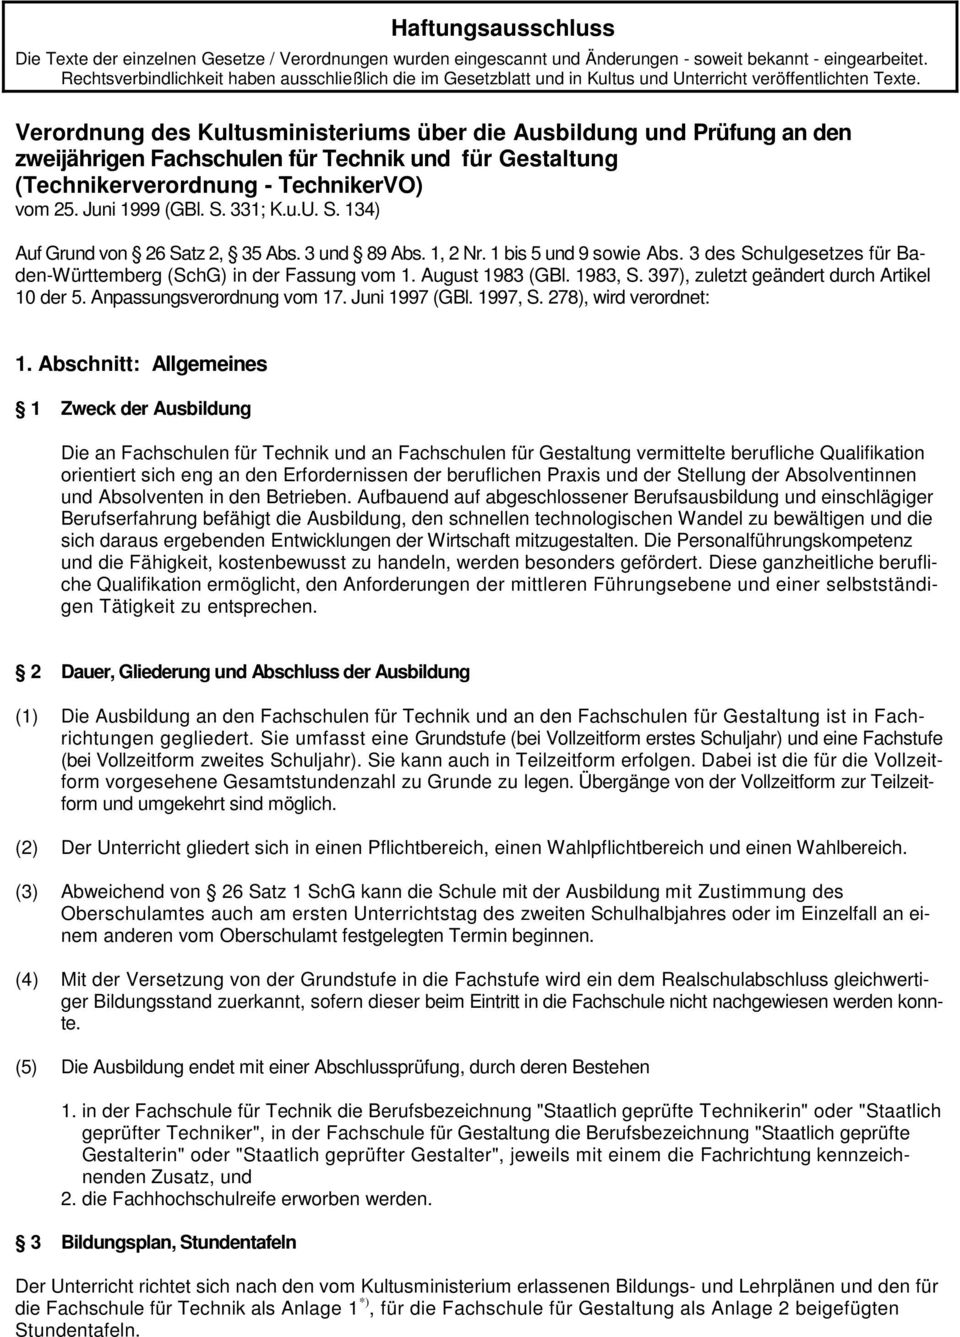 Verordnung des Kultusministeriums über die Ausbildung und Prüfung an den zweijährigen Fachschulen für Technik und für Gestaltung (Technikerverordnung - TechnikerVO) vom 25. Juni 1999 (GBl. S. 331; K.